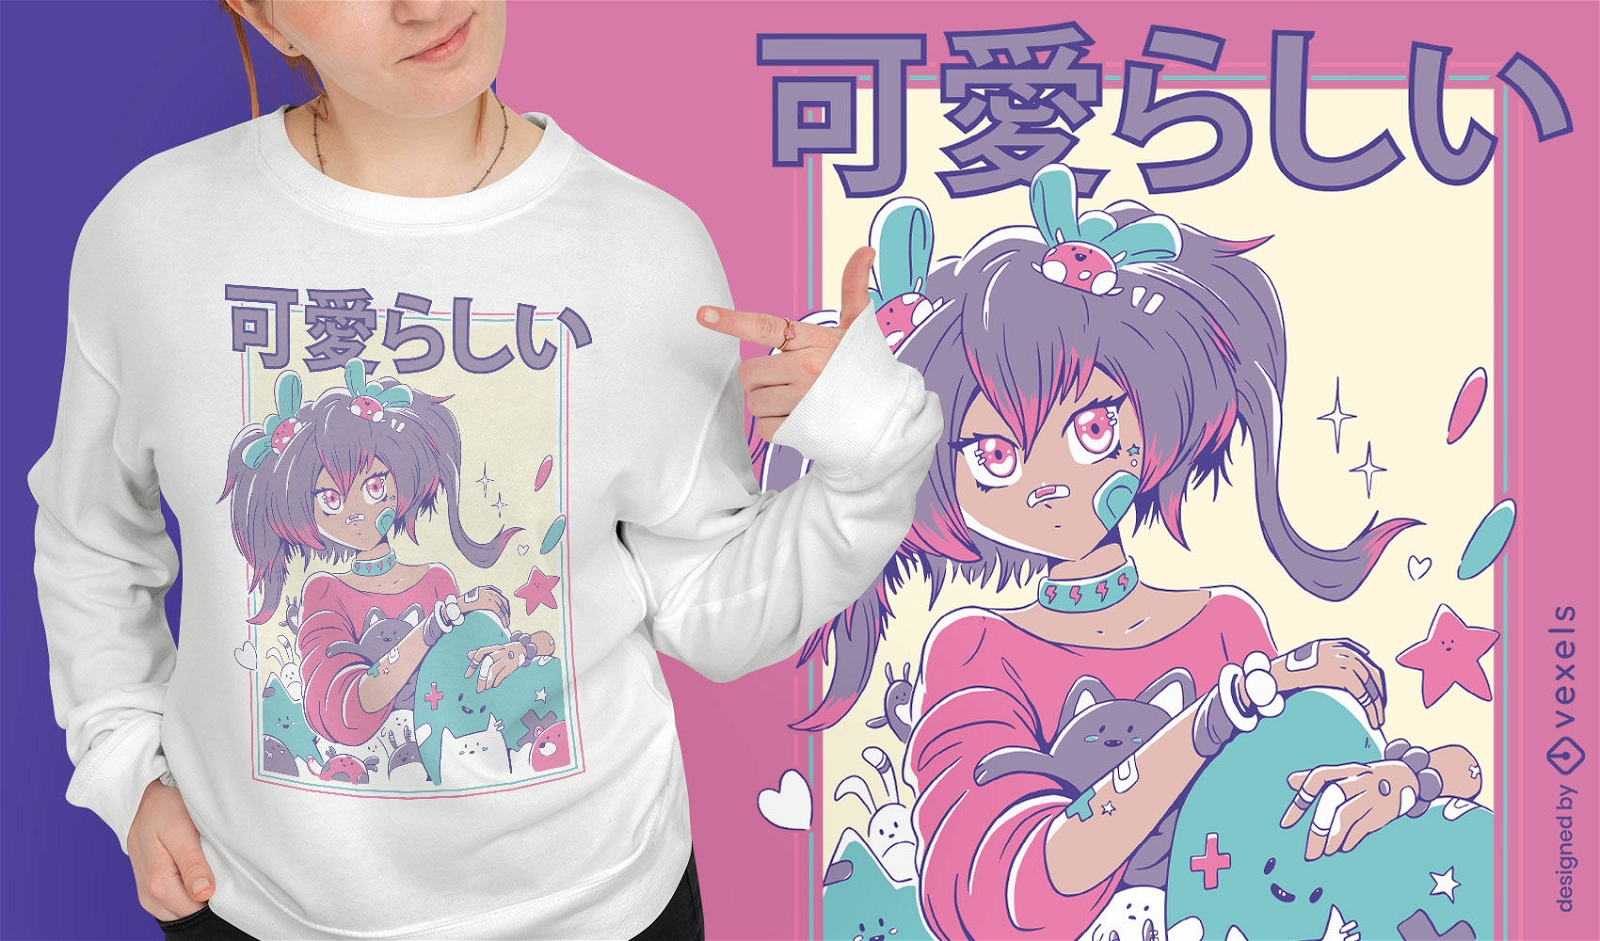 Nettes Anime-M?dchen mit Pferdeschwanz-T-Shirt-Design